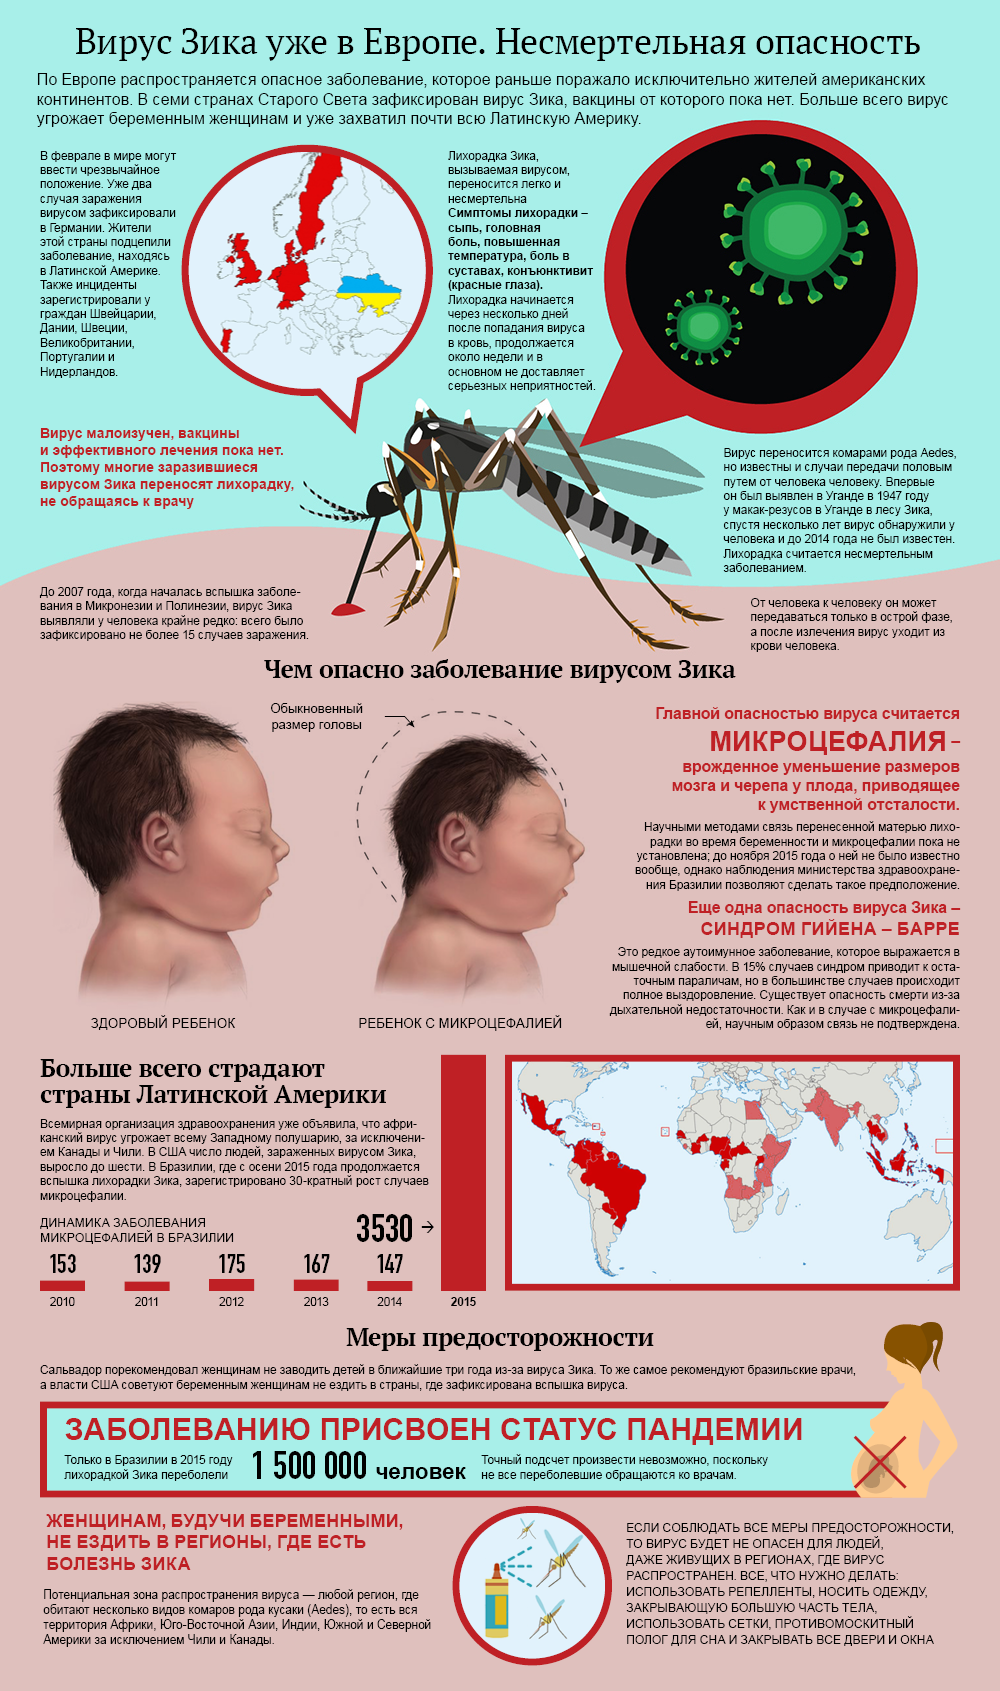 Тропические комариные вирусные лихорадки